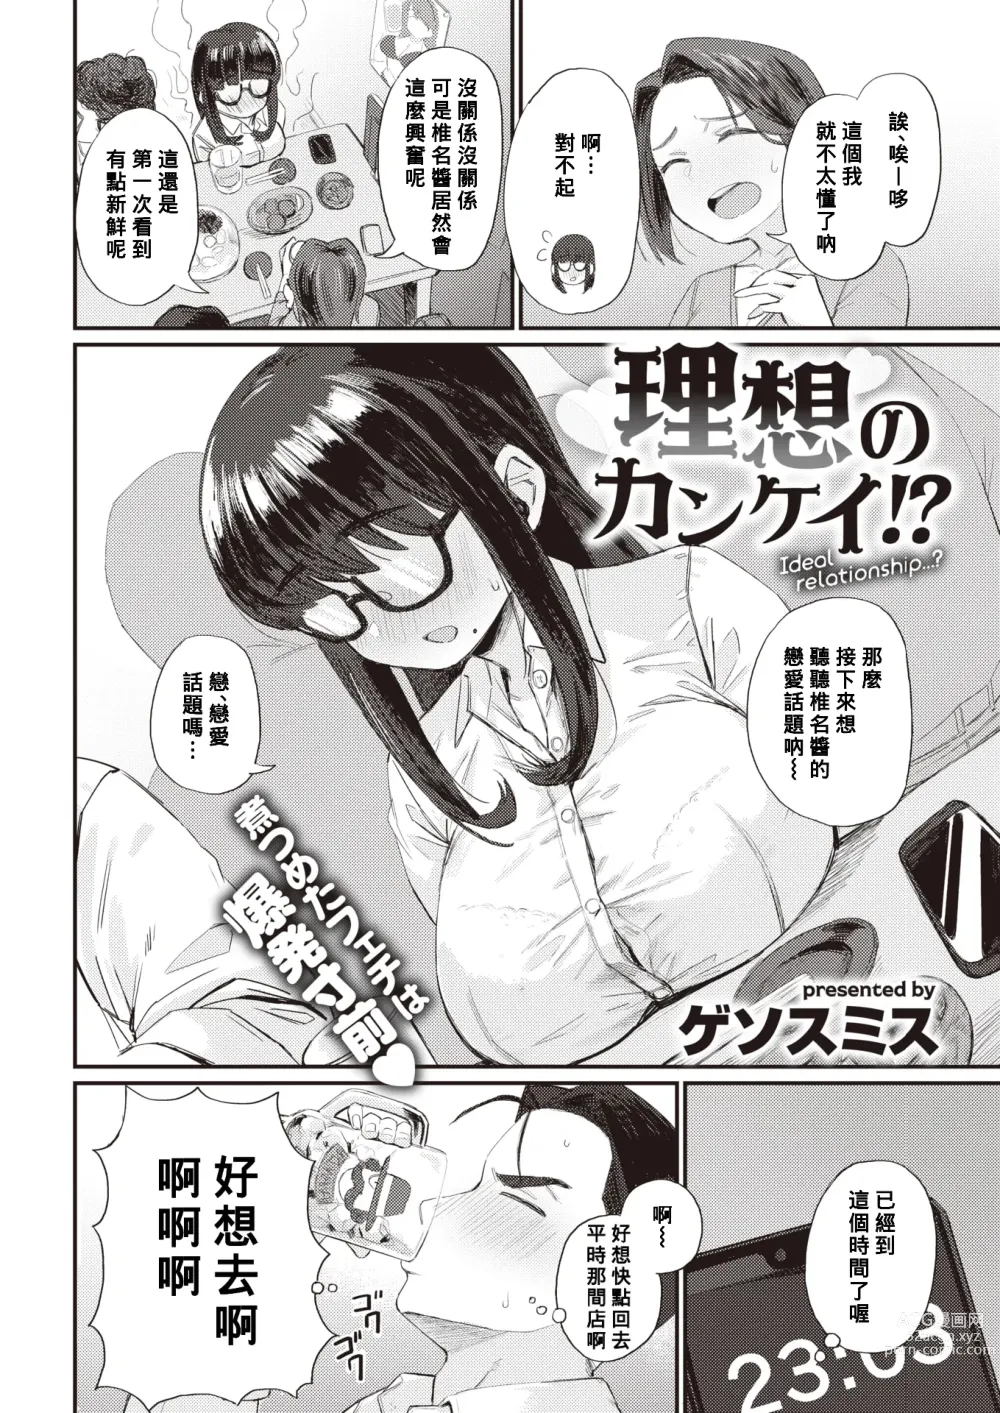 Page 2 of manga Risou no Kankei!?